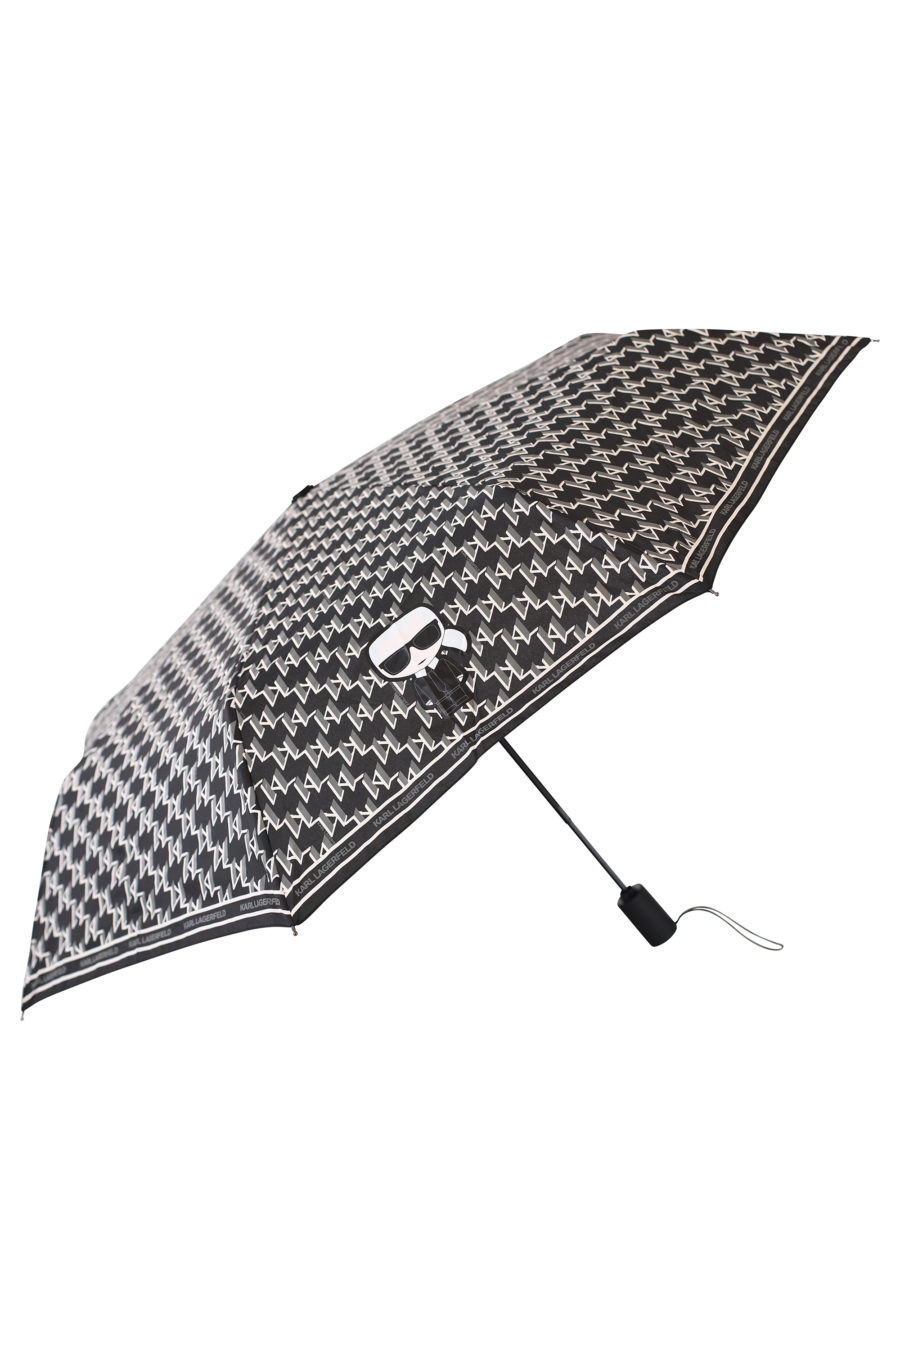 Regenschirm mit schwarzem Monogramm - IMG 2142